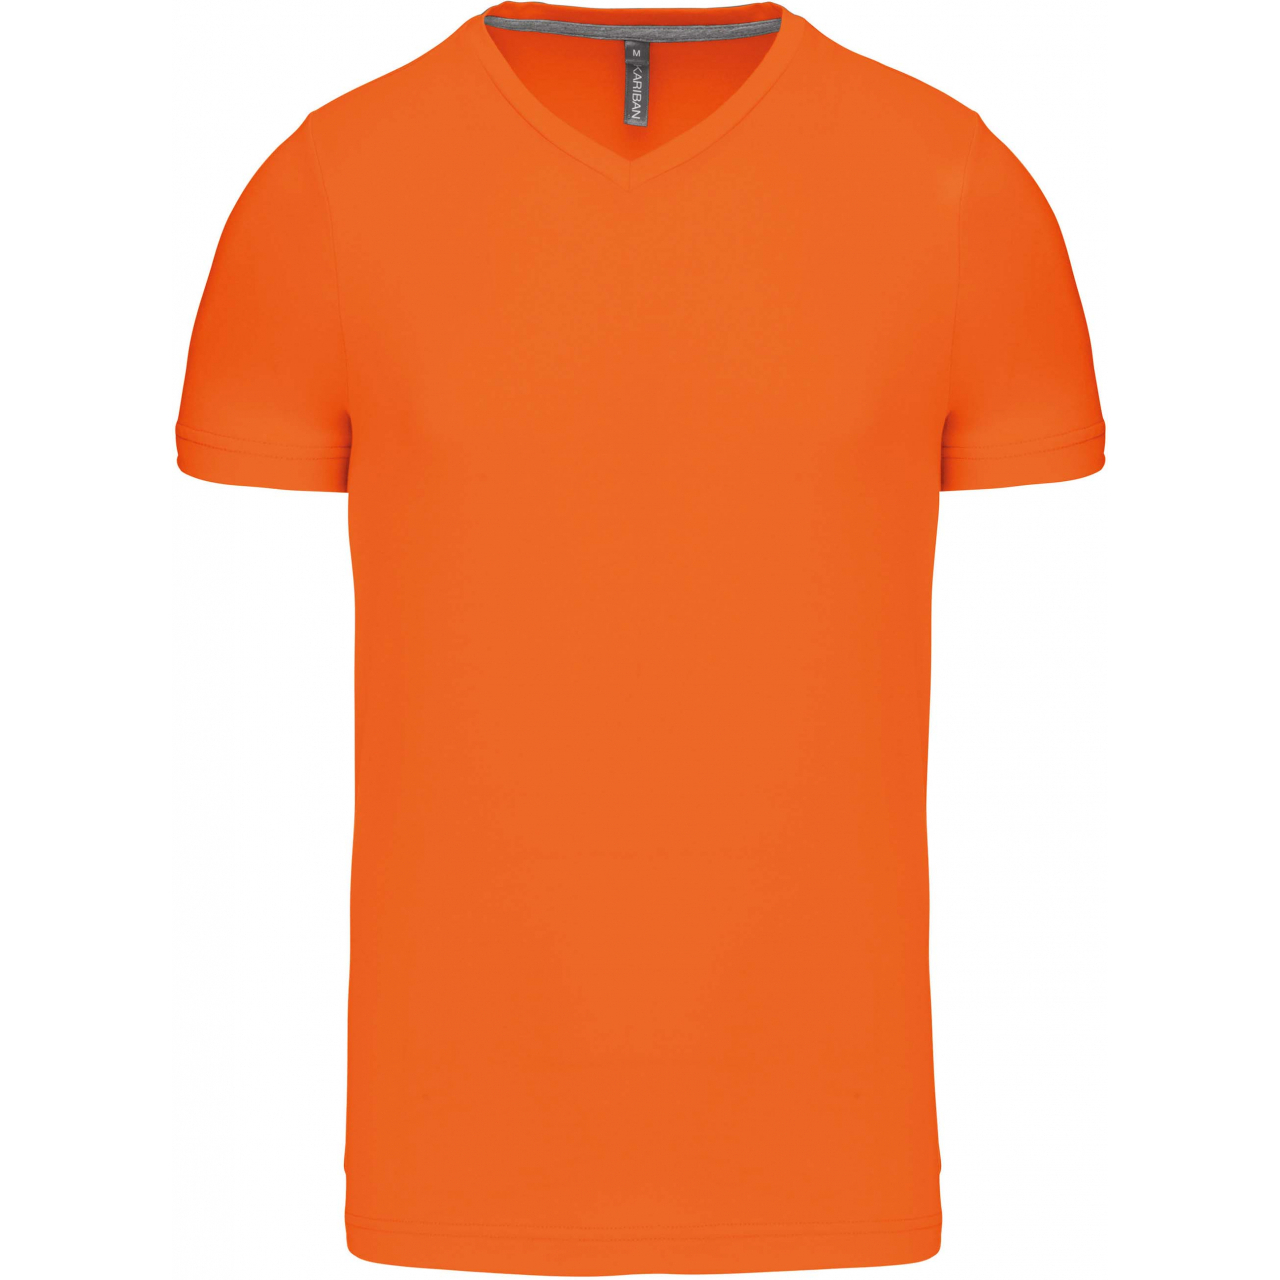 Pánské tričko Kariban krátký rukáv V-neck - oranžové, XL